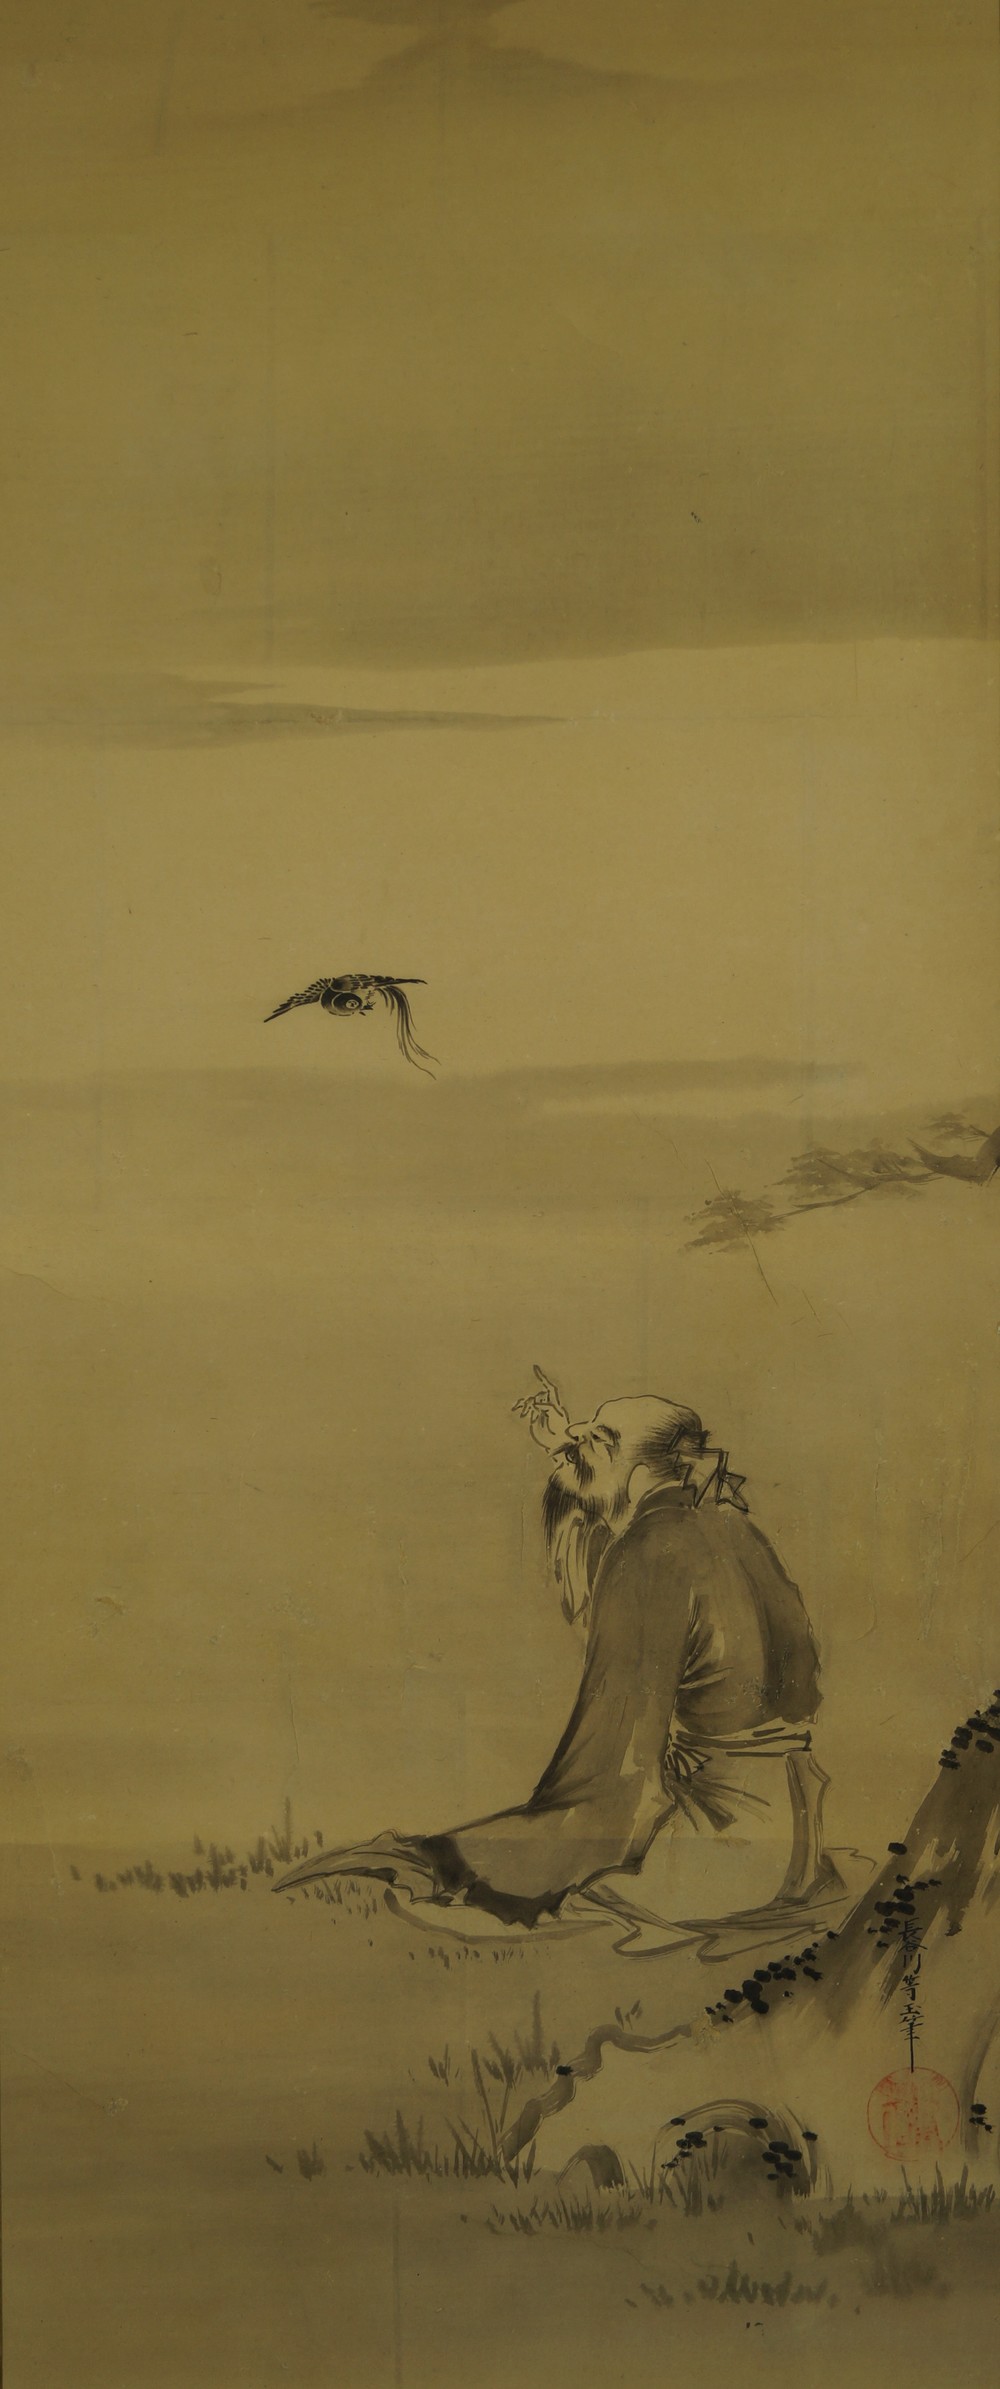 Der Mann und der Vogel - Japanisches Rollbild (Kakejiku, Kakemono)